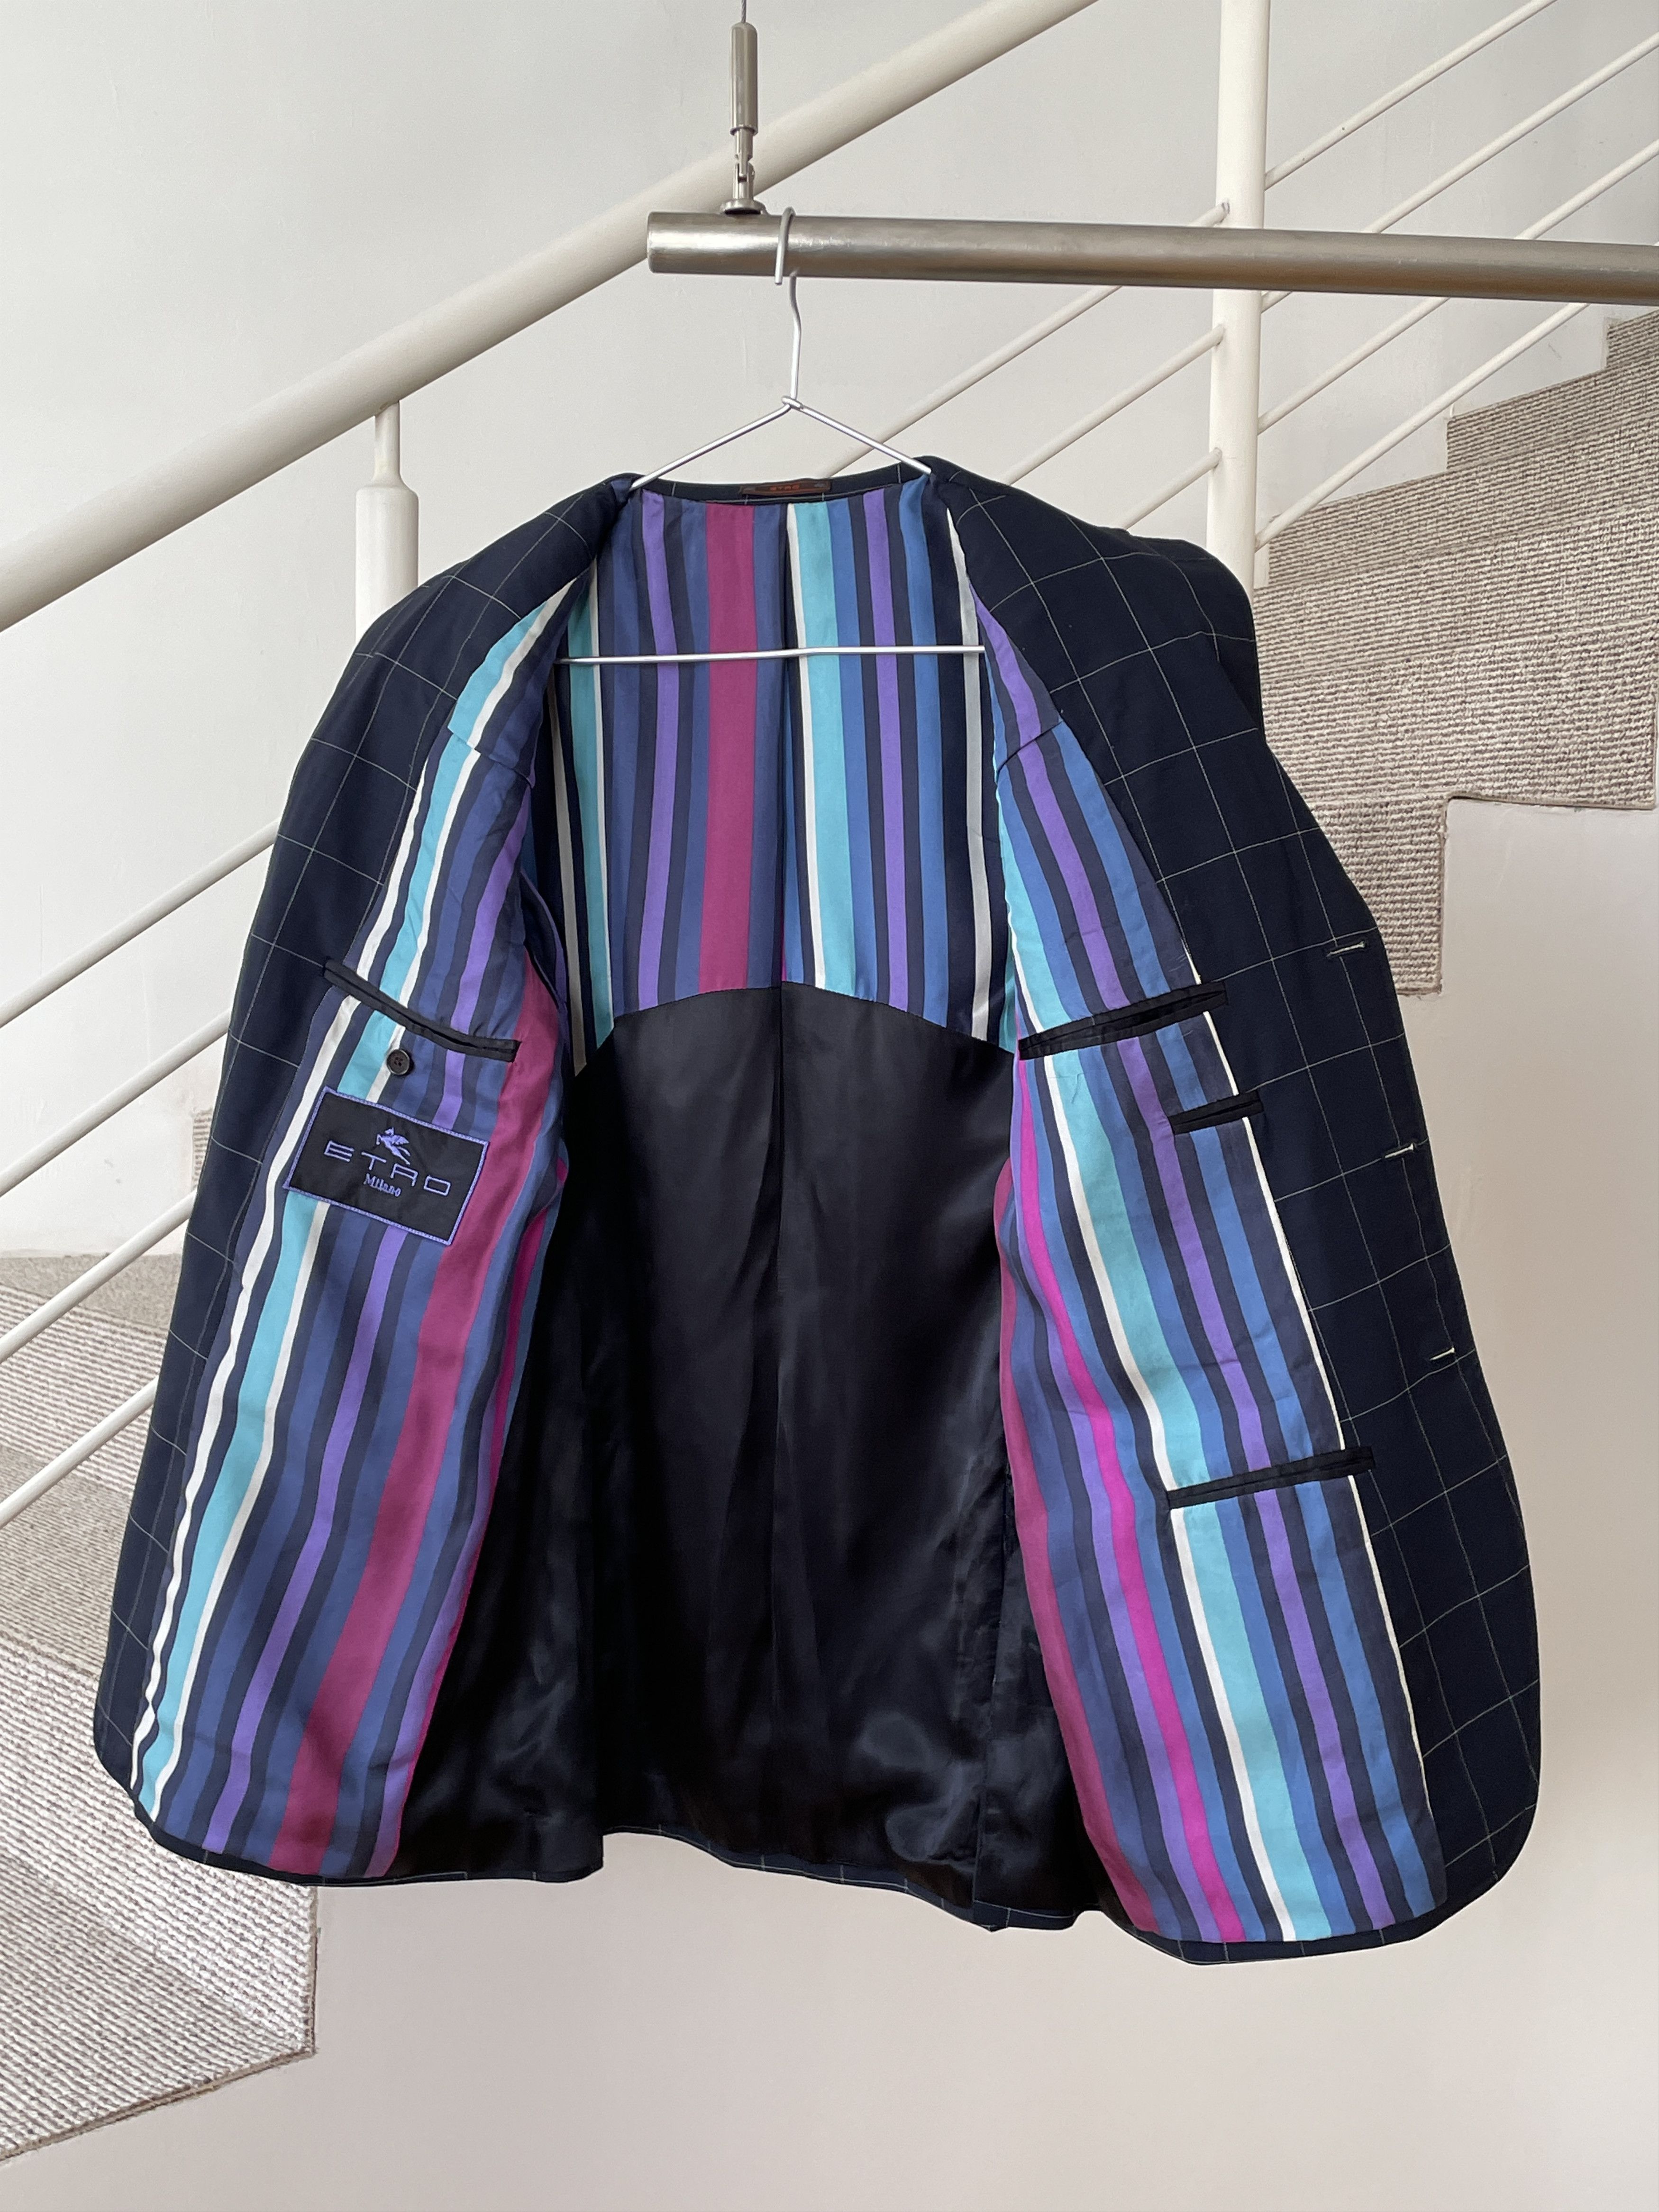 Etro ETRO Jacket Coat Blazer Trousers Suit Plaid Wool A7923 Size 40R - 4 Thumbnail